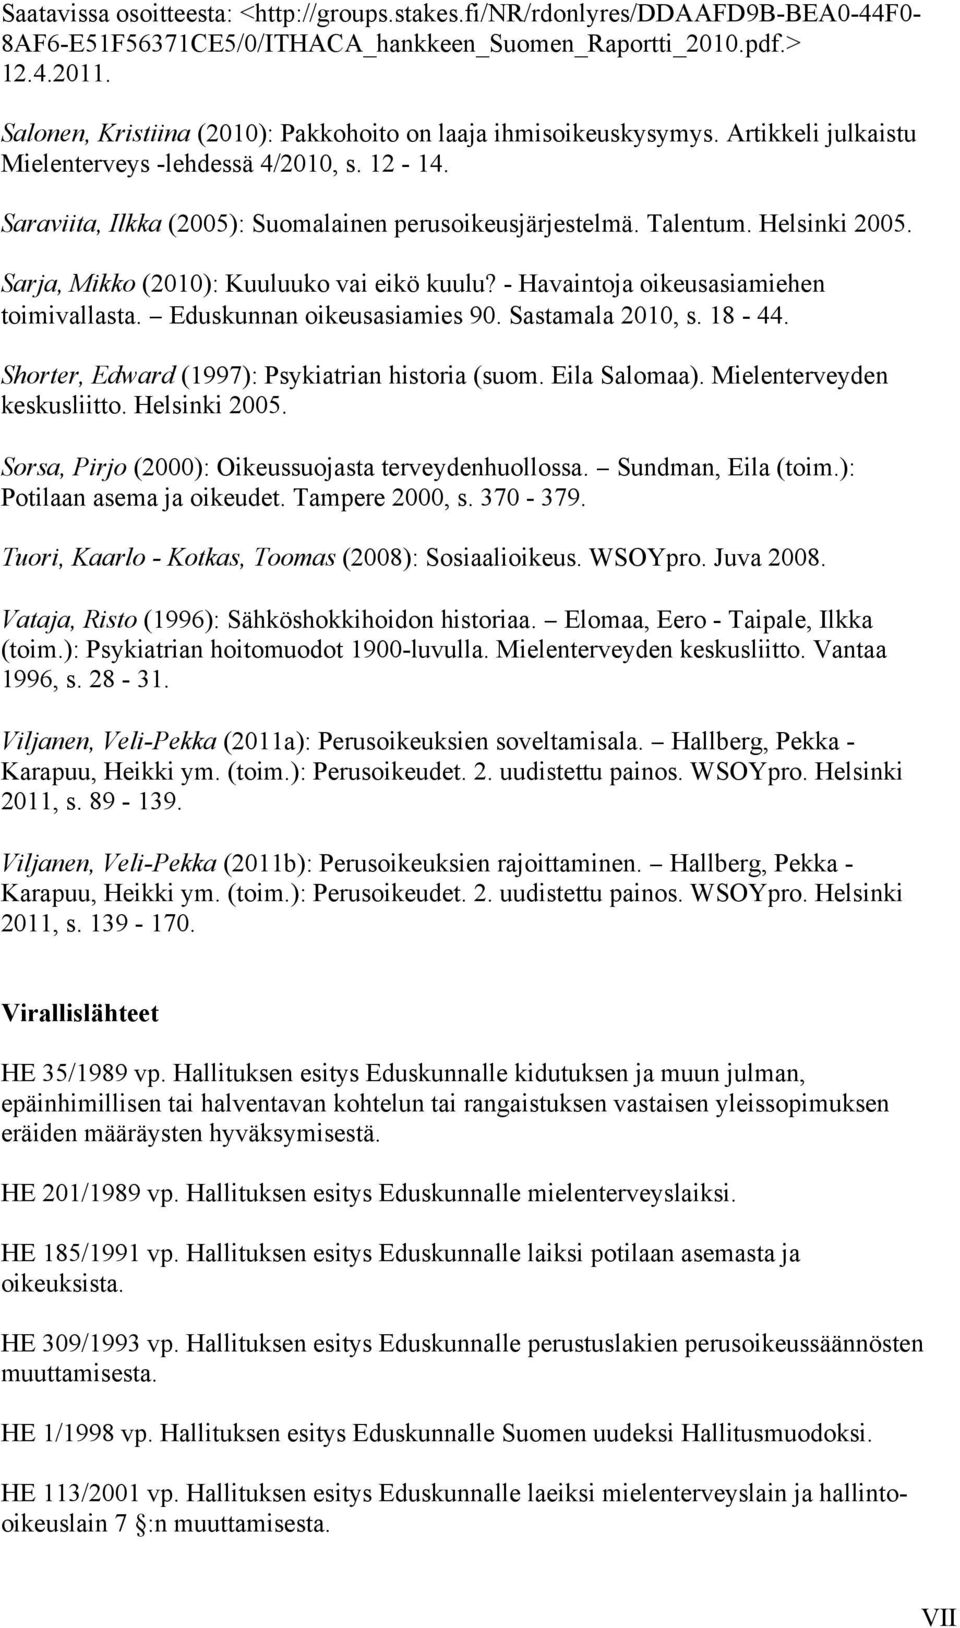 Helsinki 2005. Sarja, Mikko (2010): Kuuluuko vai eikö kuulu? - Havaintoja oikeusasiamiehen toimivallasta. Eduskunnan oikeusasiamies 90. Sastamala 2010, s. 18-44.